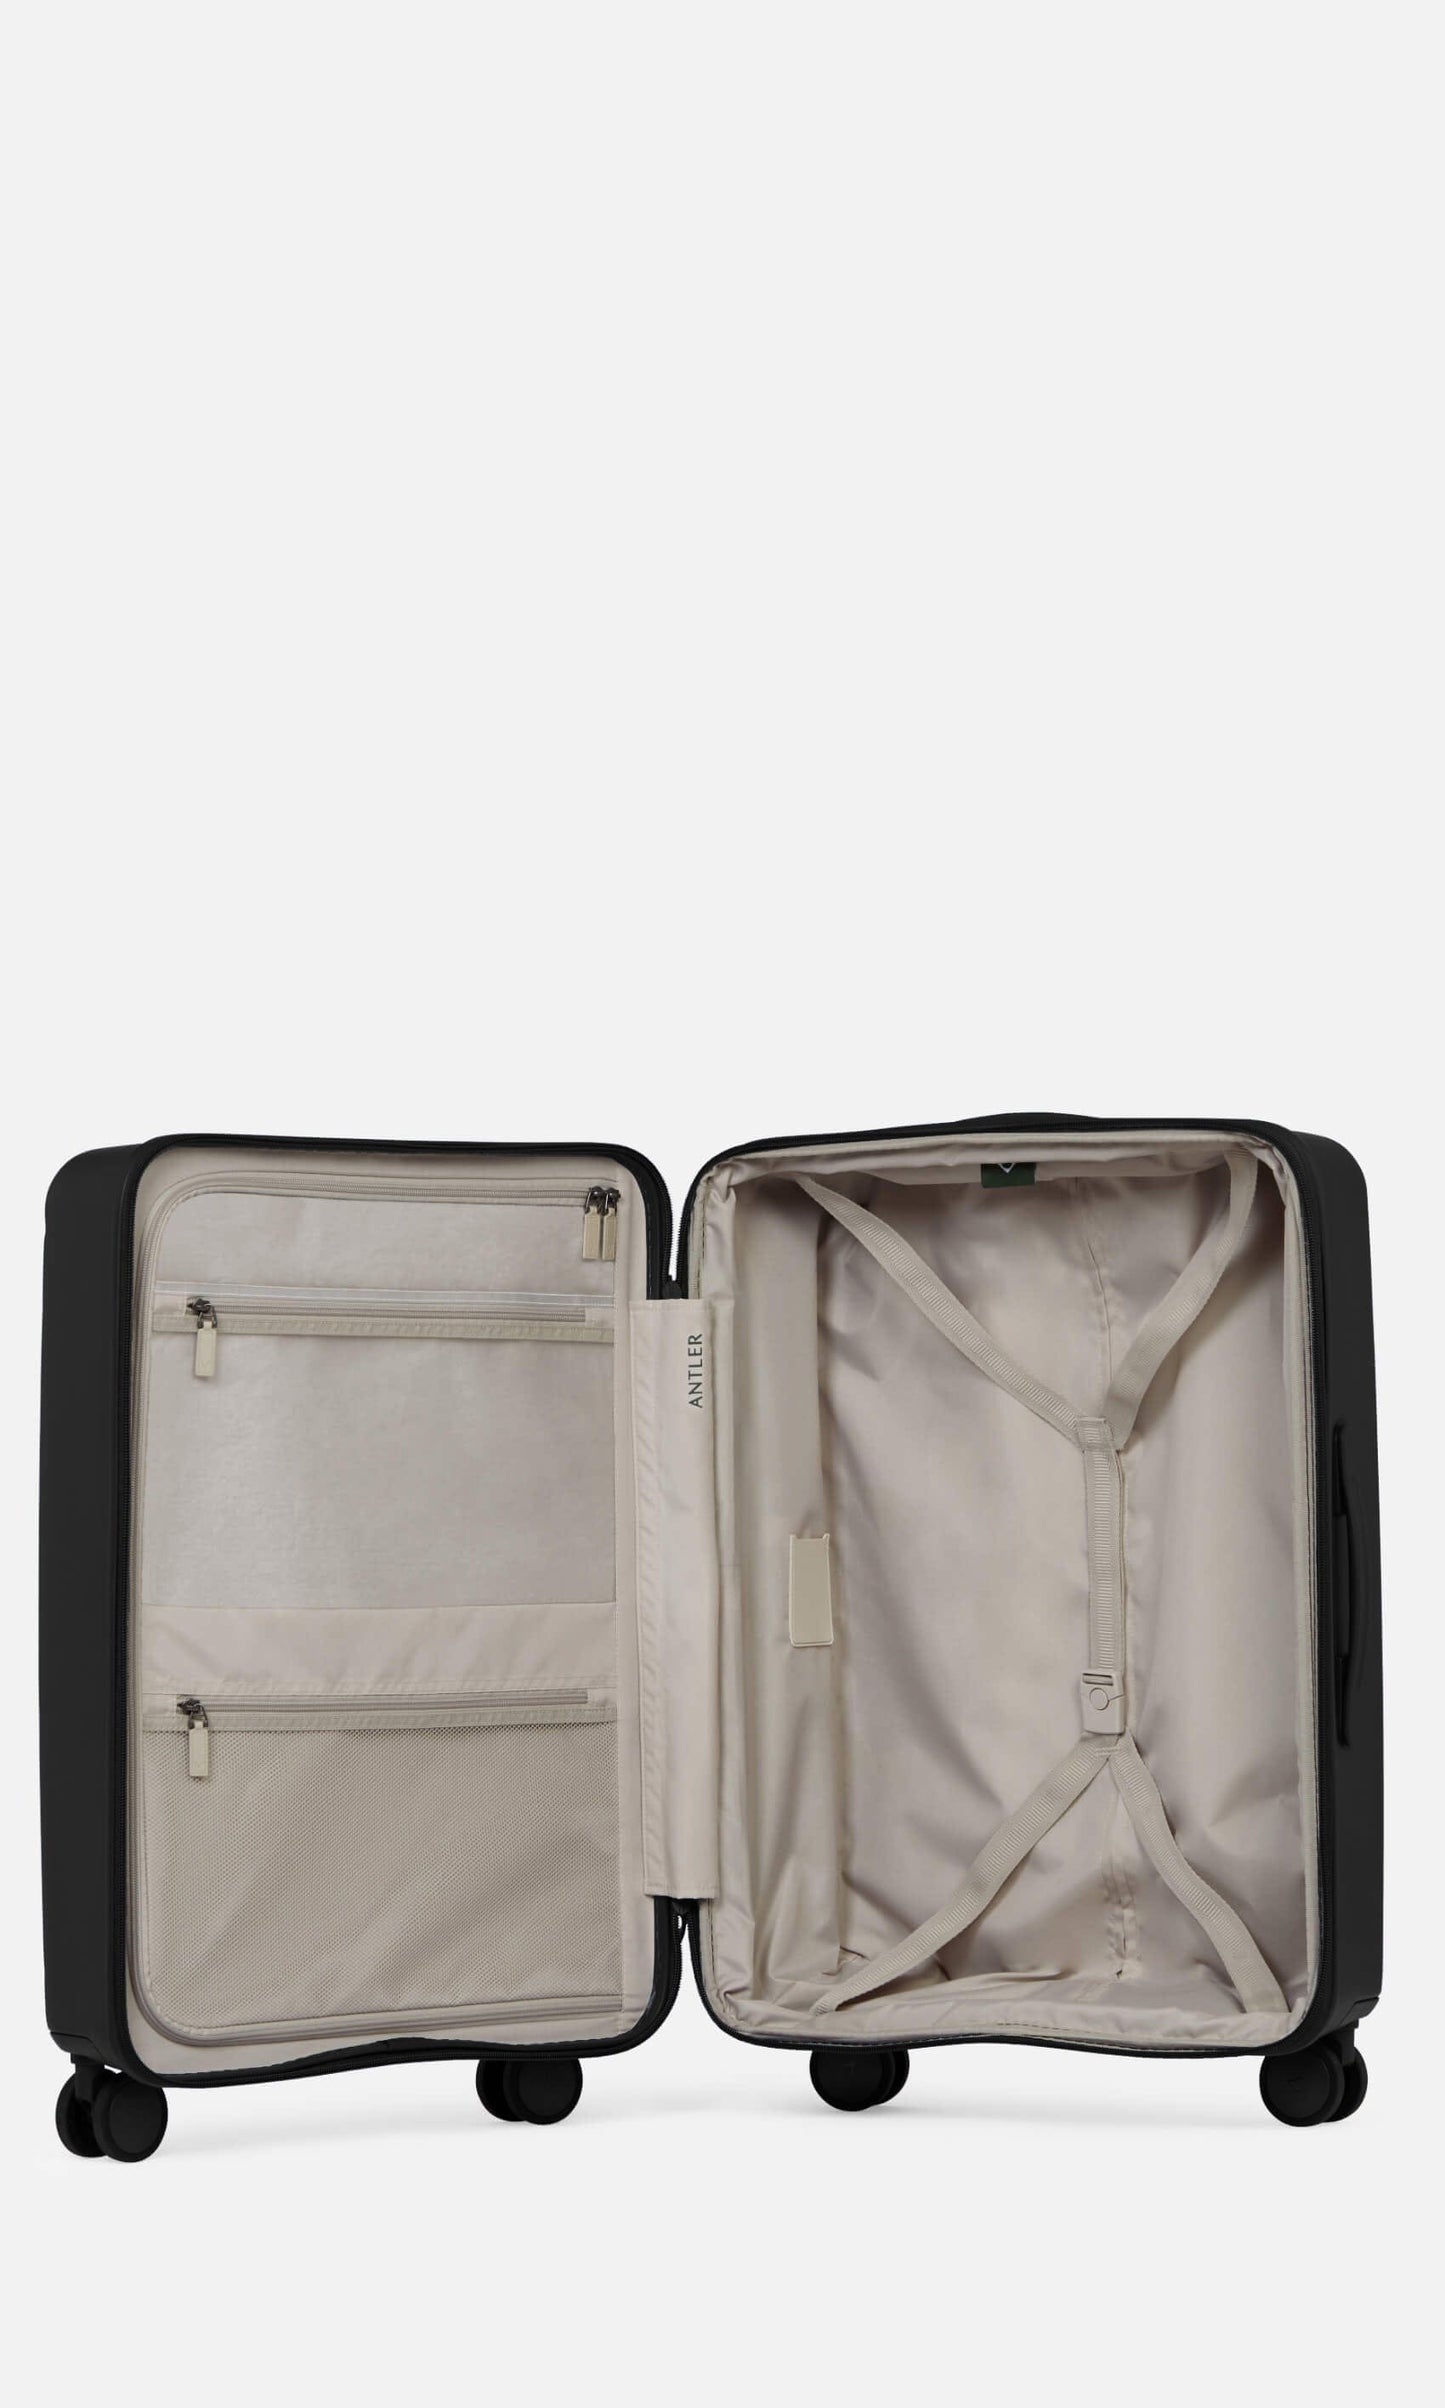 Antler Luggage -  Stamford medium in midnight black - Hard Suitcases Stamford Medium Suitcase Black | Hard Luggage | Antler UK